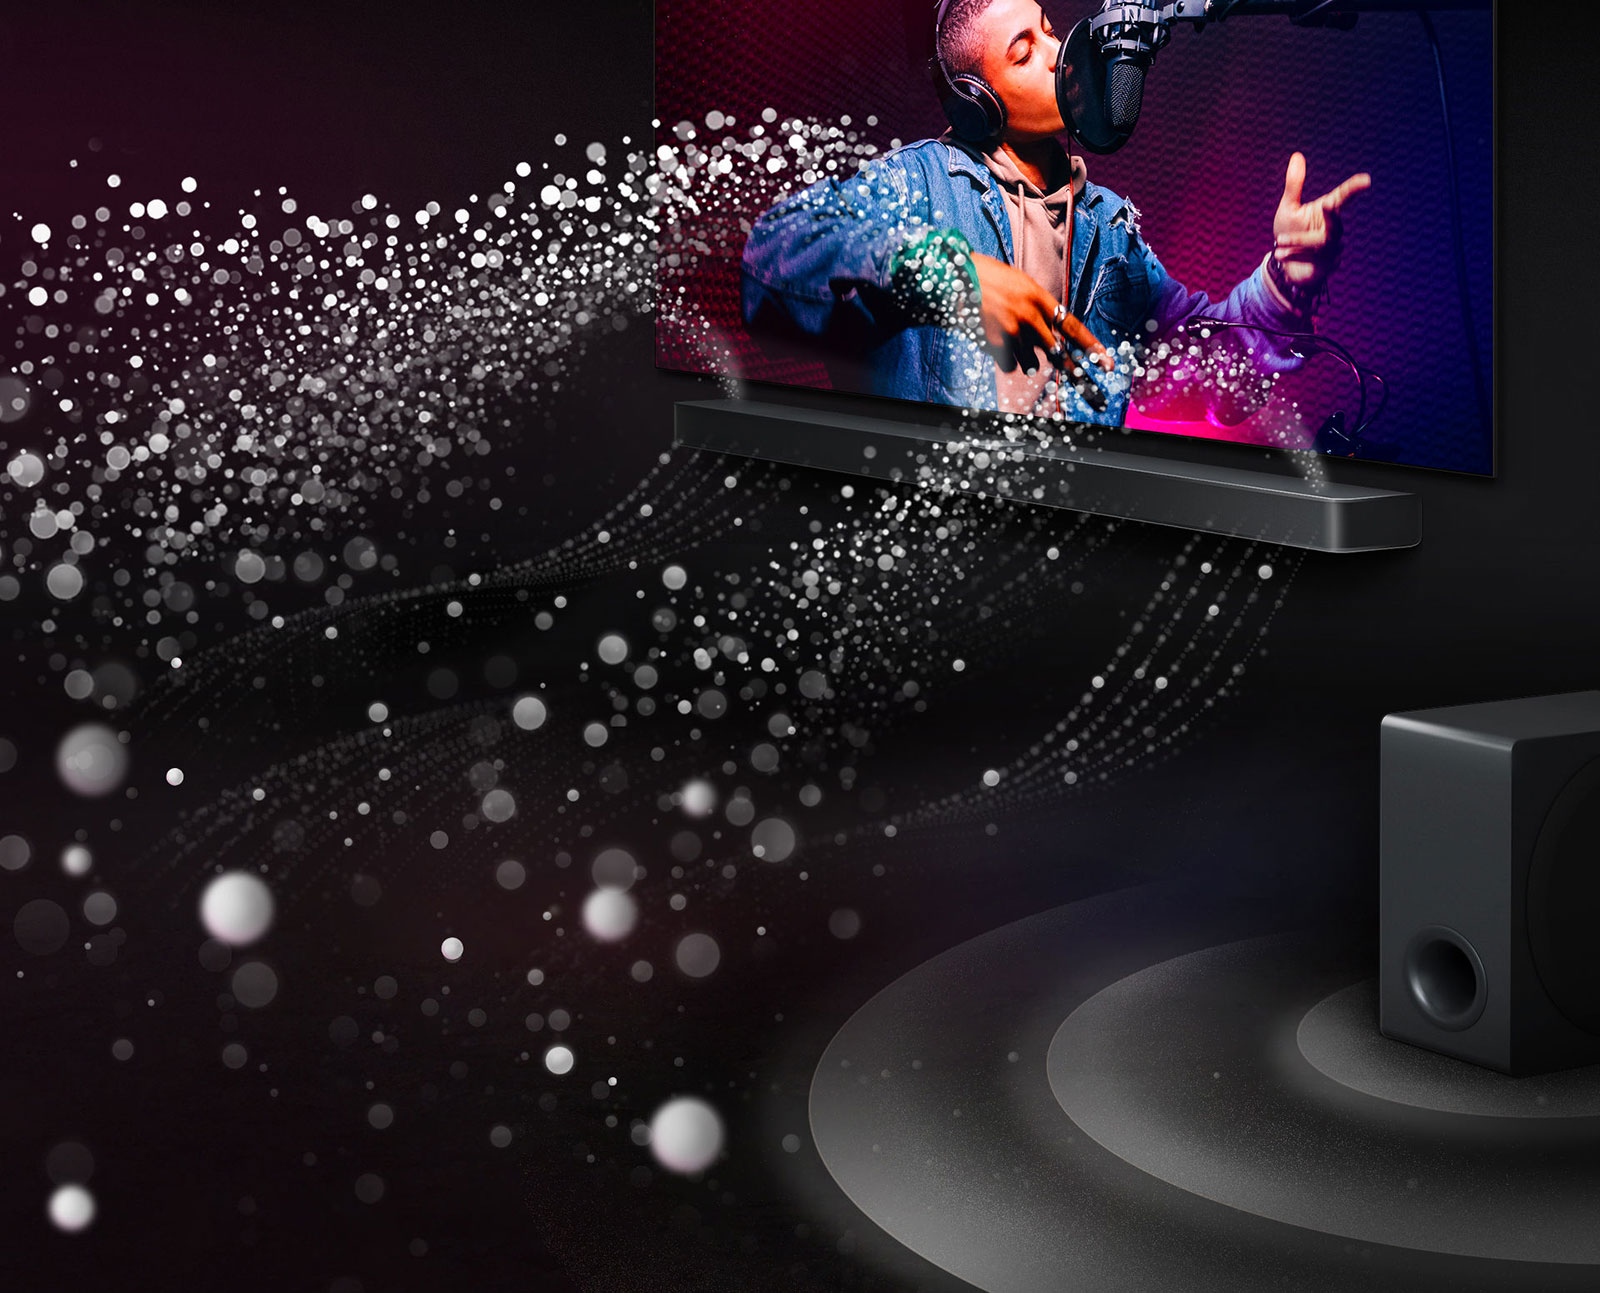 LG Soundbar und LG TV in einem schwarzen Raum bei der Wiedergabe einer Musikaufführung. Weiße Tröpfchen, die Schallwellen darstellen, schießen von der Soundbar nach oben und nach vorne. Ein Subwoofer erzeugt einen Klangeffekt von unten.